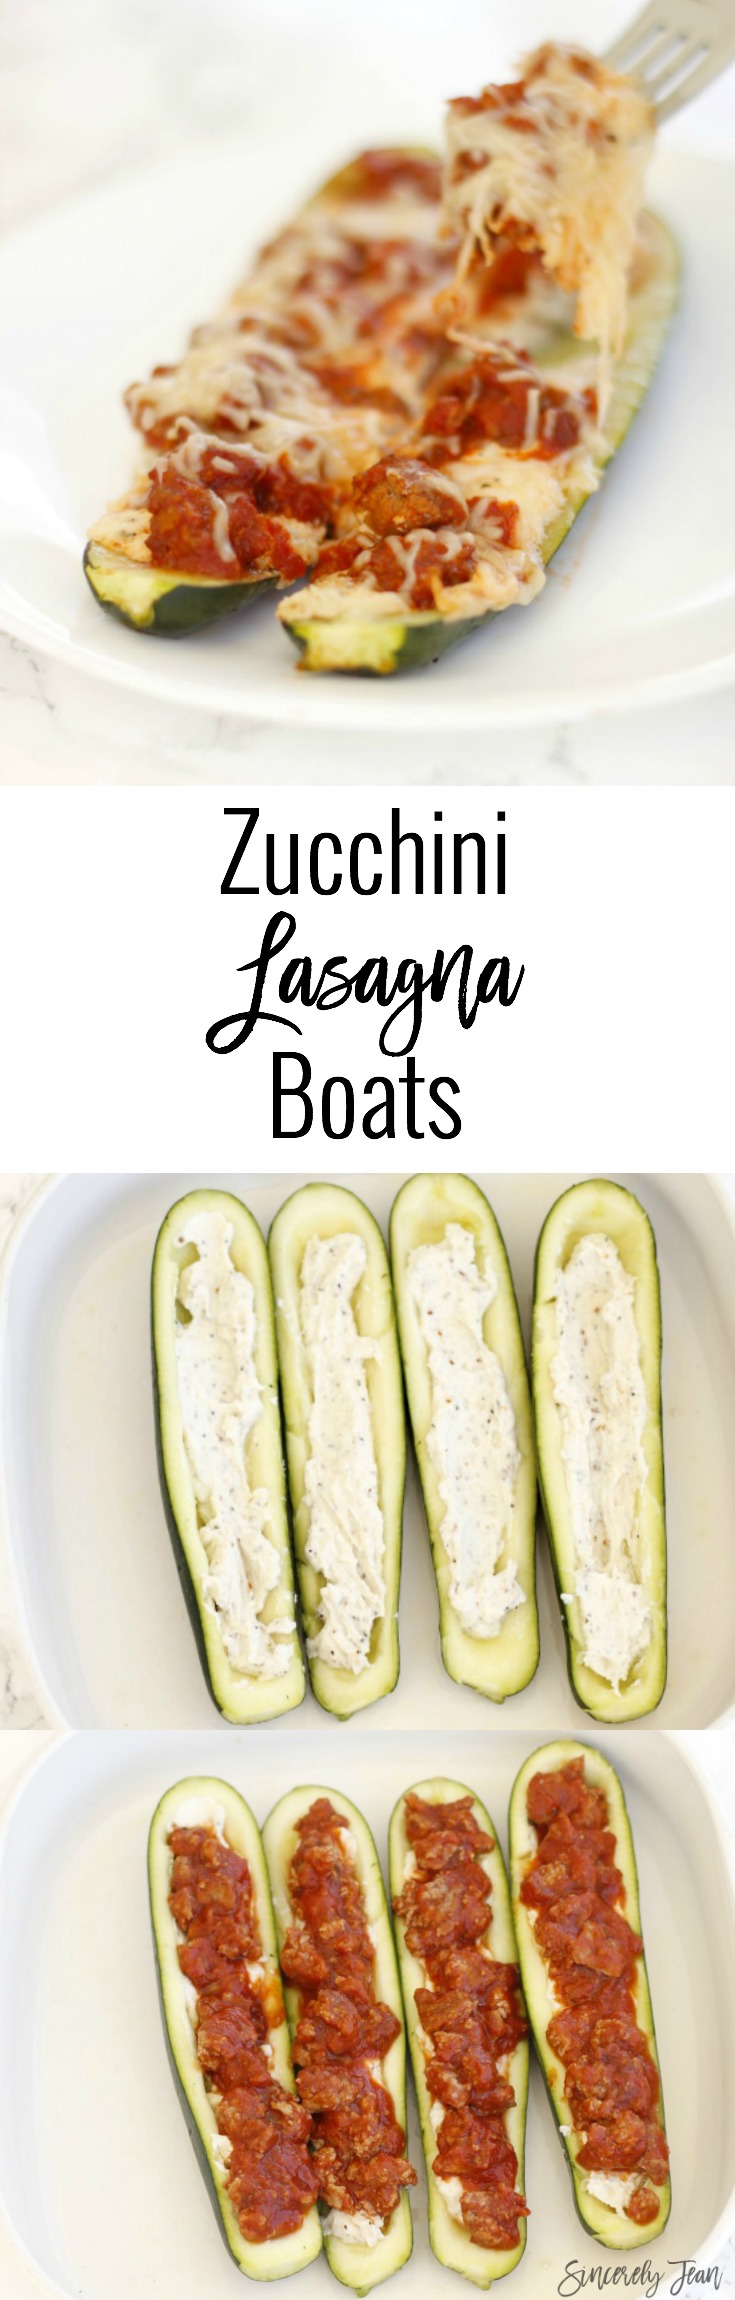 SincerelyJean.com vegetable lasagna boats - simple recipes!